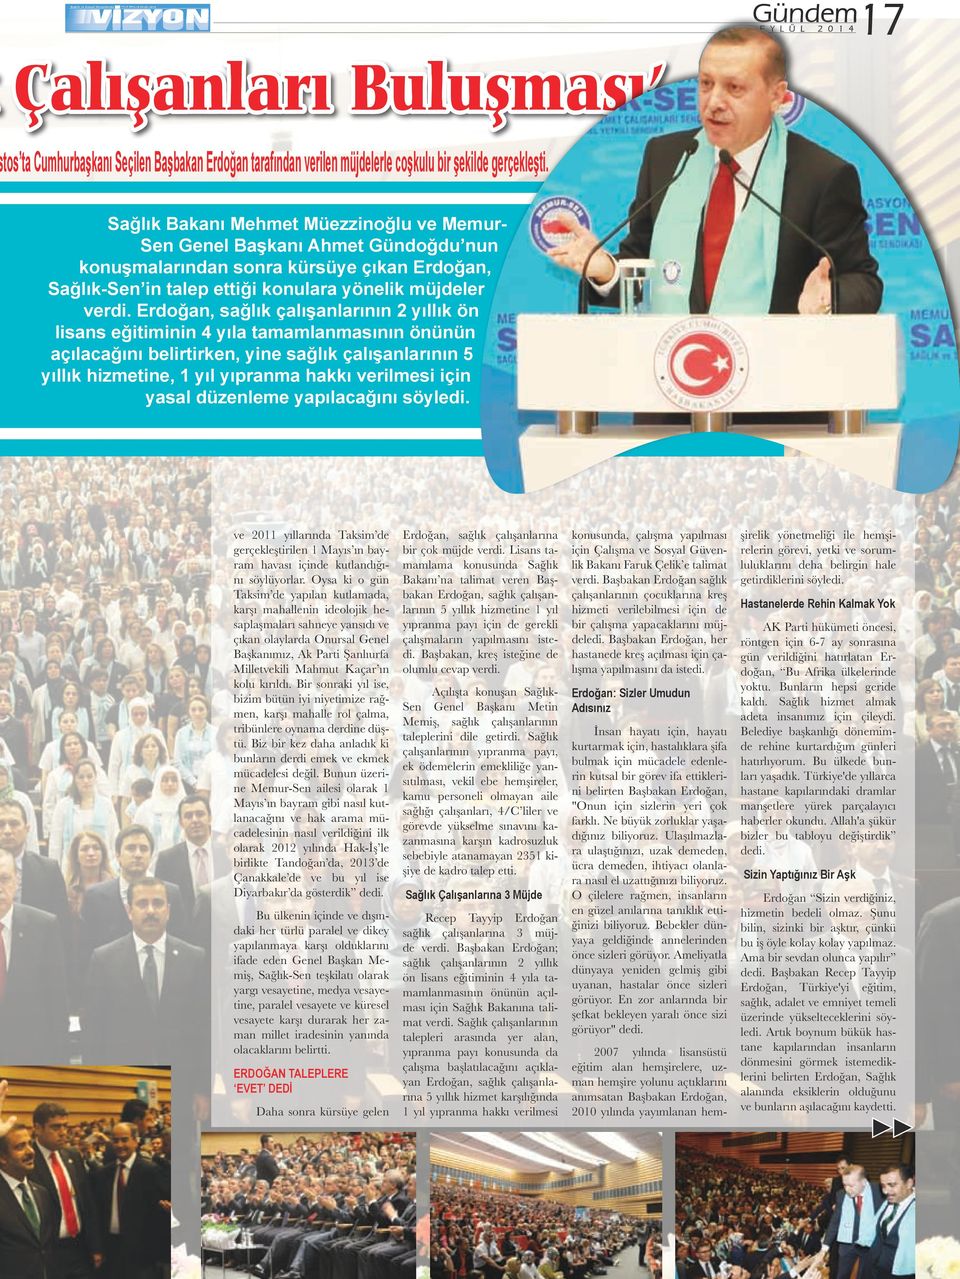 Erdoğan, sağlık çalışanlarının 2 yıllık ön lisans eğitiminin 4 yıla tamamlanmasının önünün açılacağını belirtirken, yine sağlık çalışanlarının 5 yıllık hizmetine, 1 yıl yıpranma hakkı verilmesi için